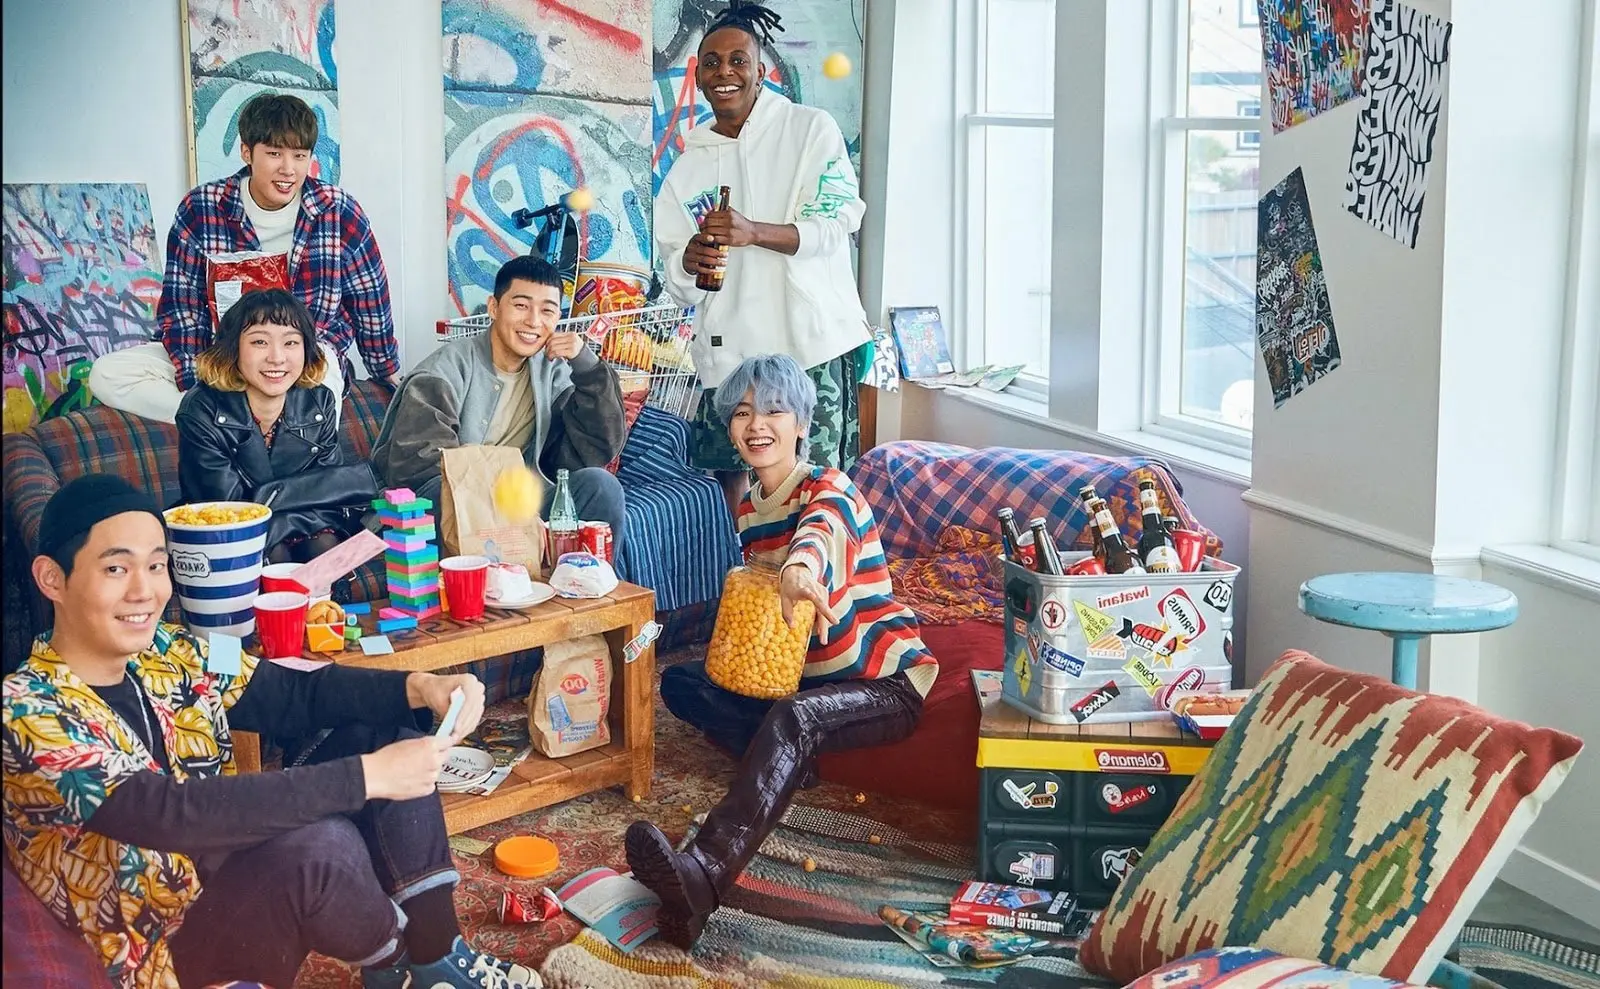 گروهی دختر و پسر جوان در اتاقی شلوغ و رنگارنگ در سریال کلاس ایته وون